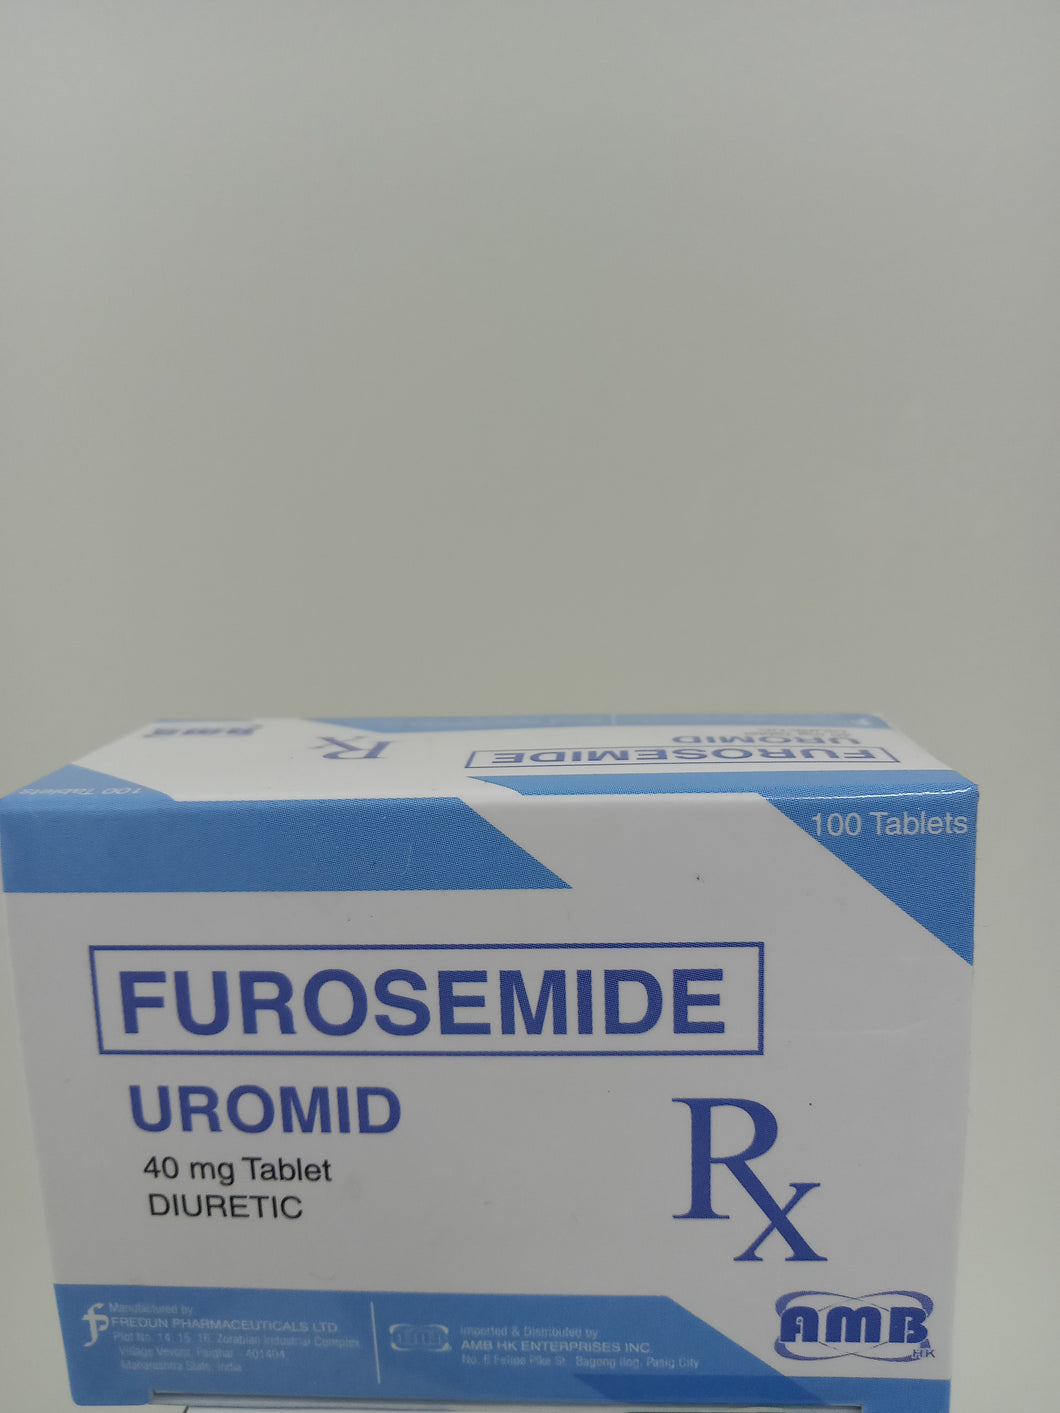 Uromid (Furosemide)